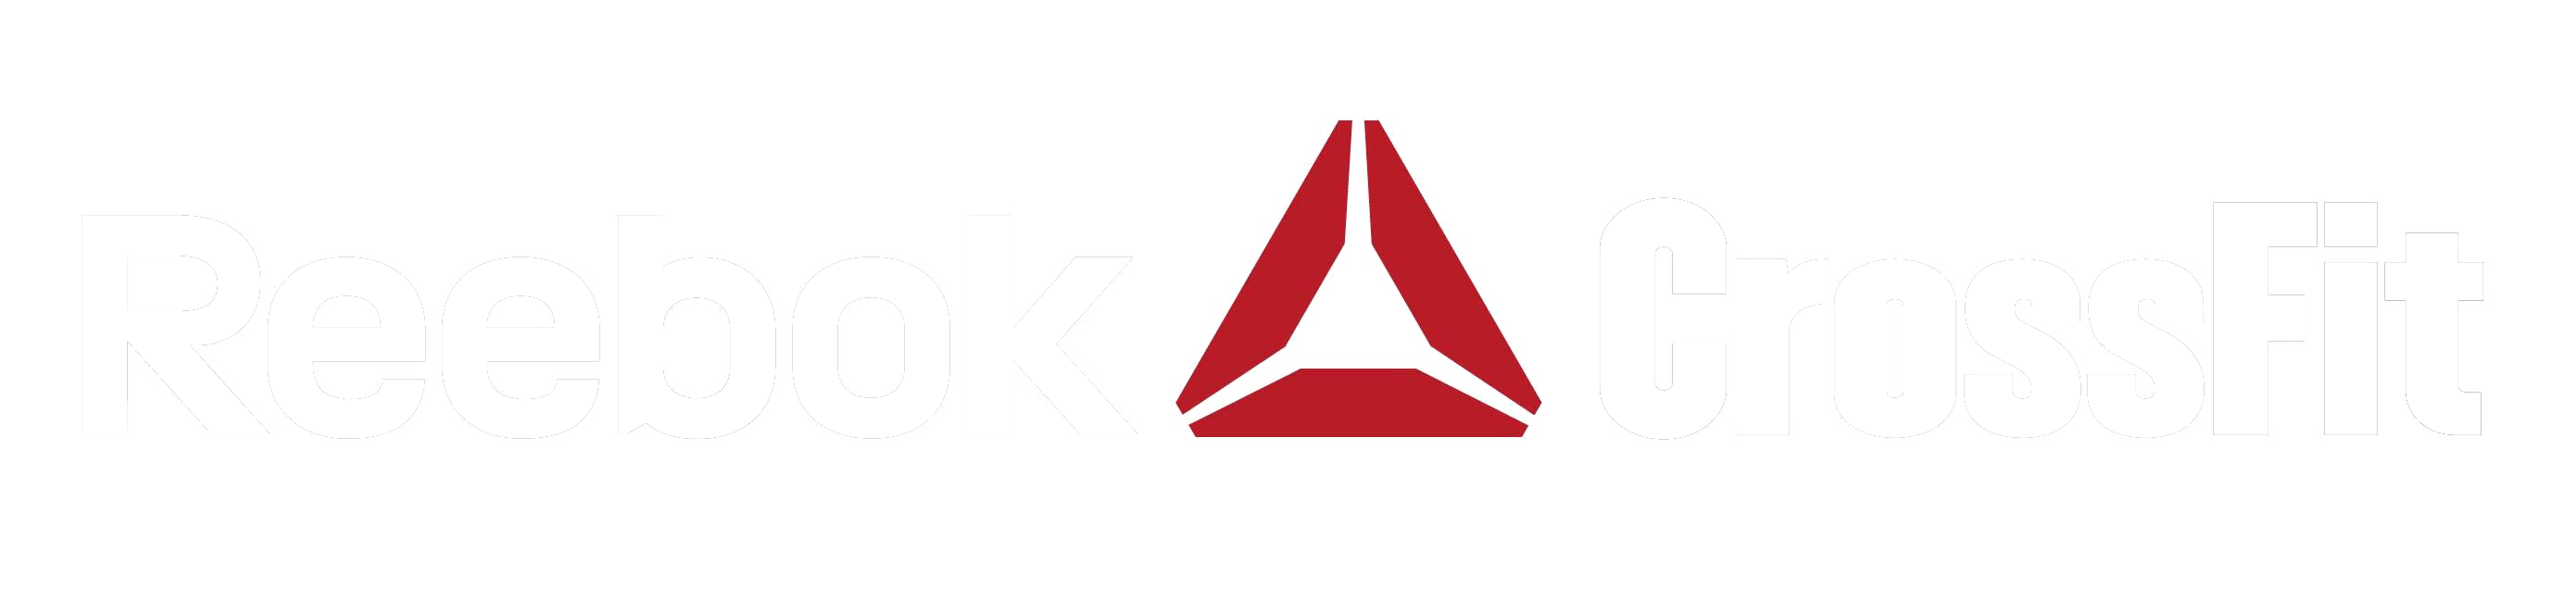 Reebok CrossFit Logo - Reebok Logo Png - Free Transparent PNG Logos